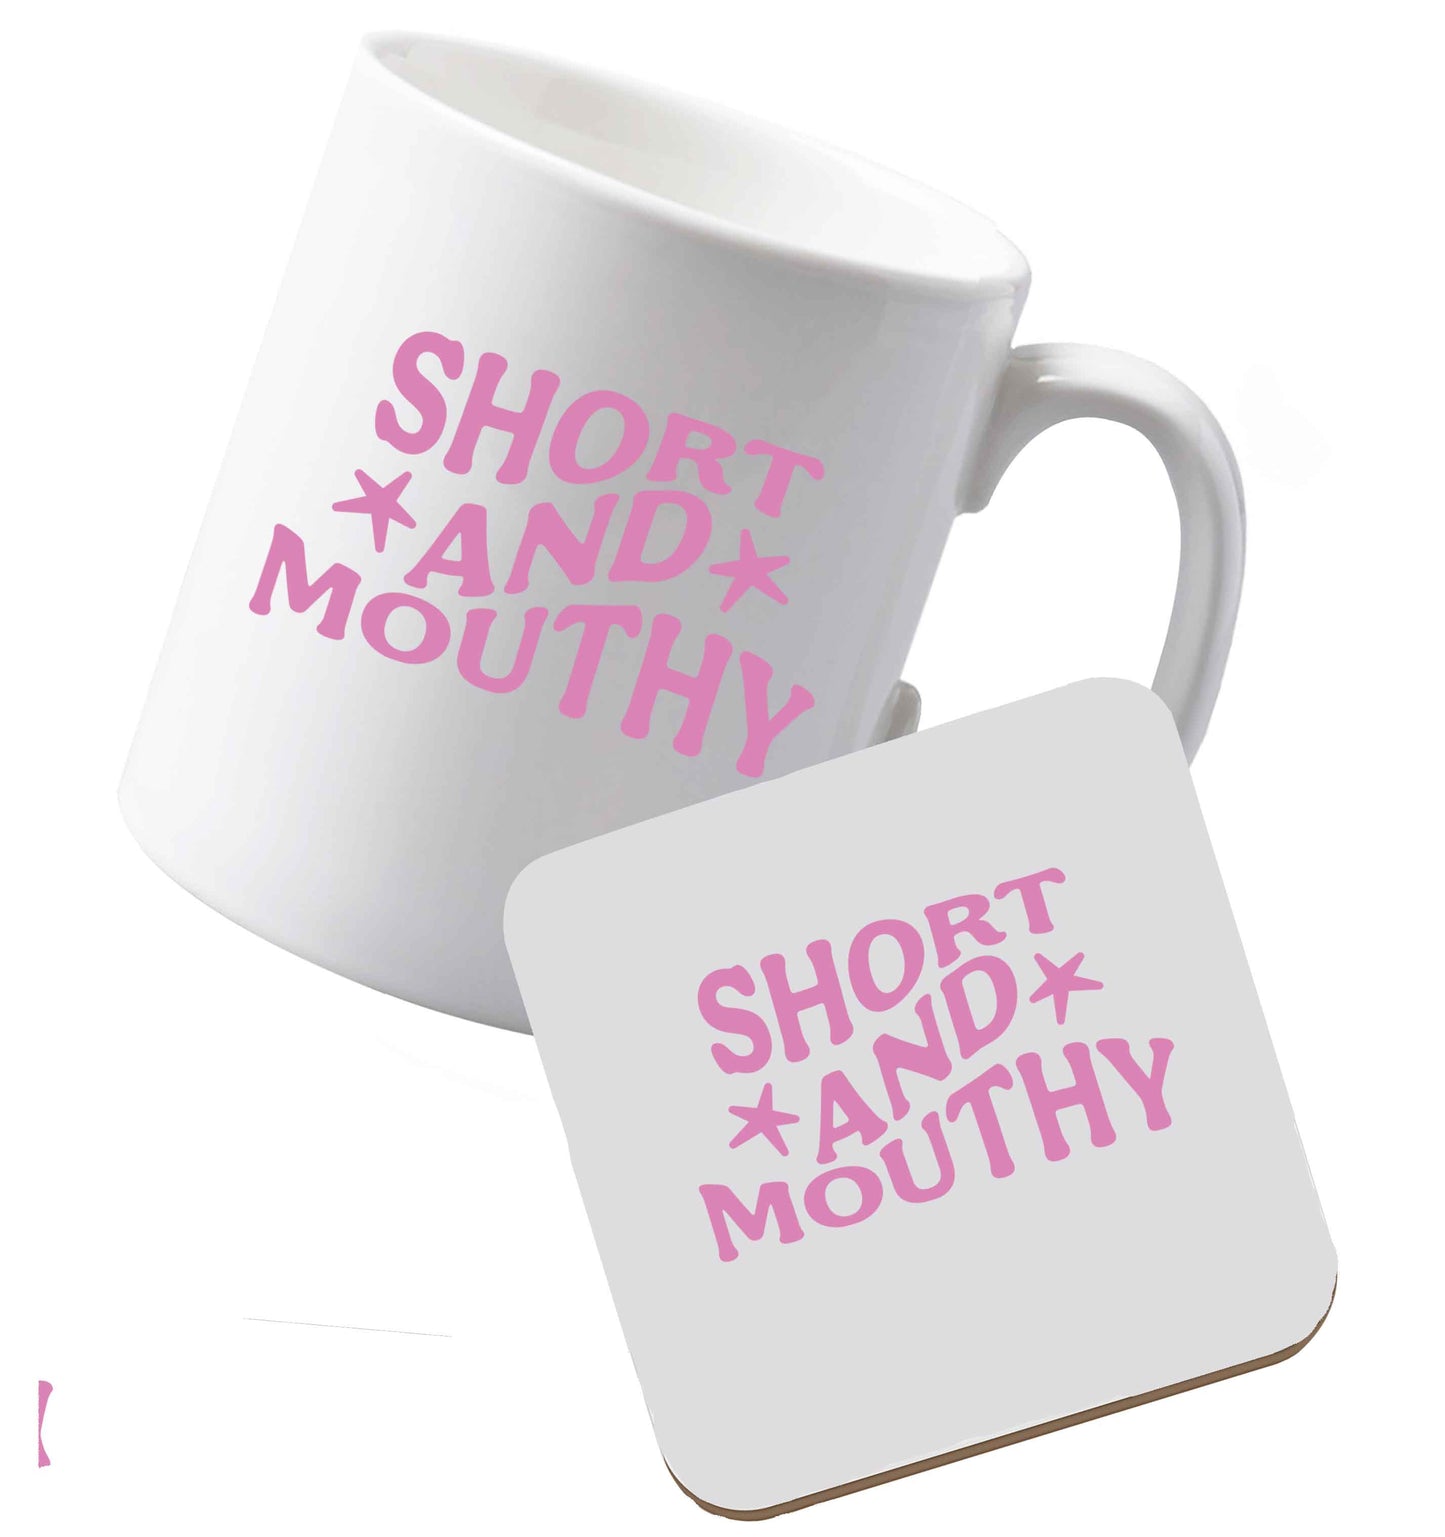 10 oz Ceramic mug and coasterShort and Mouthy both sides